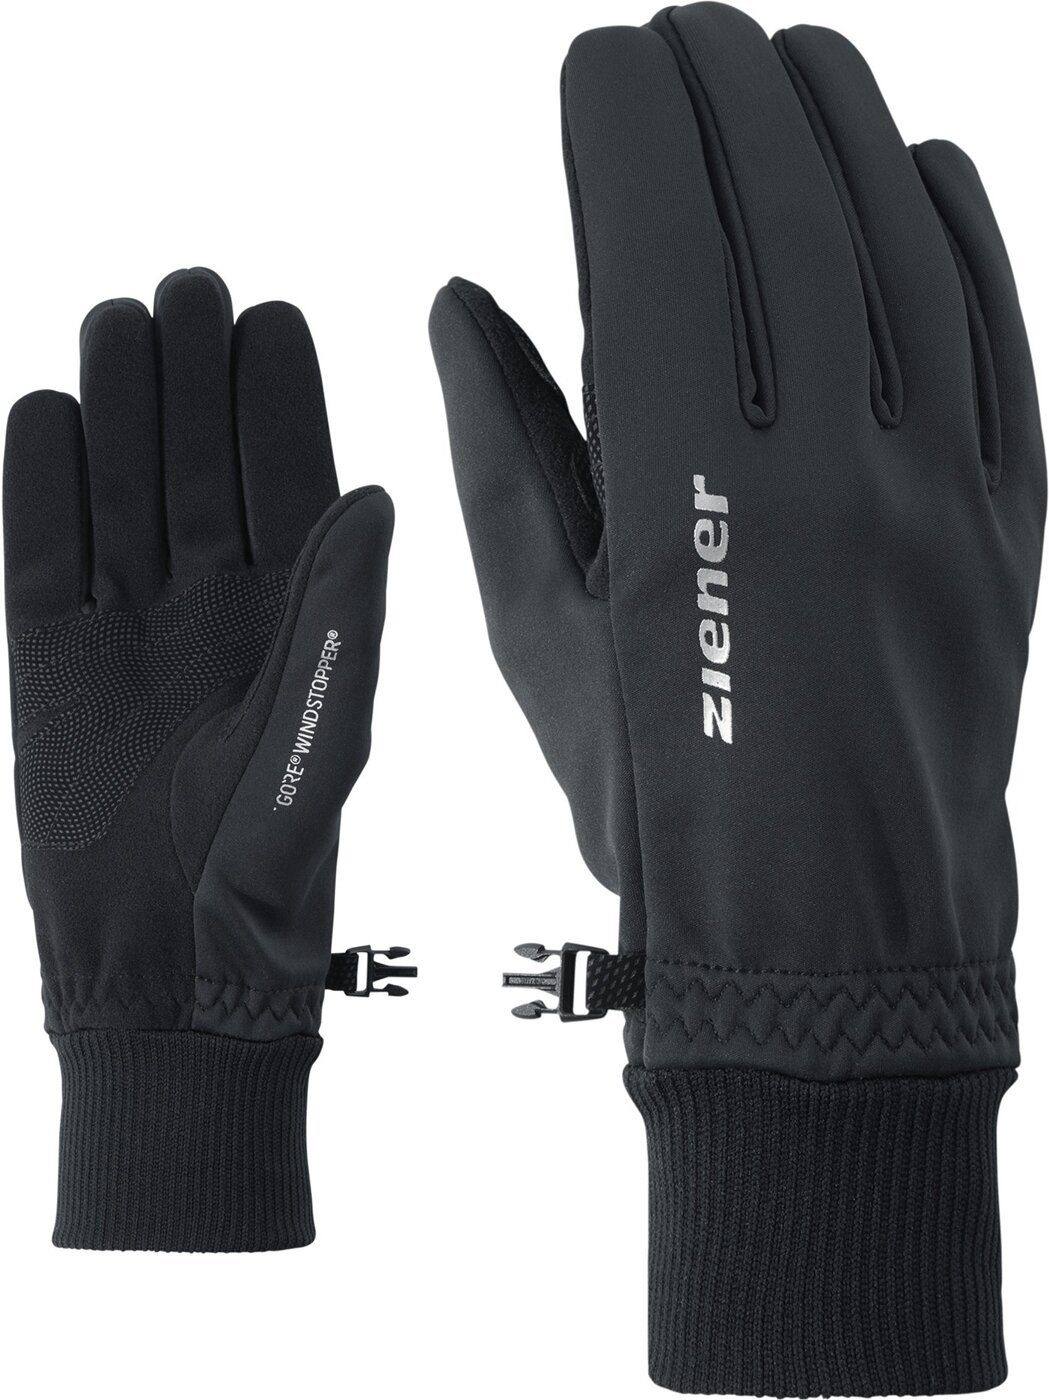 Ziener Multisporthandschuhe IDEALIST WS glove multisport 12 black